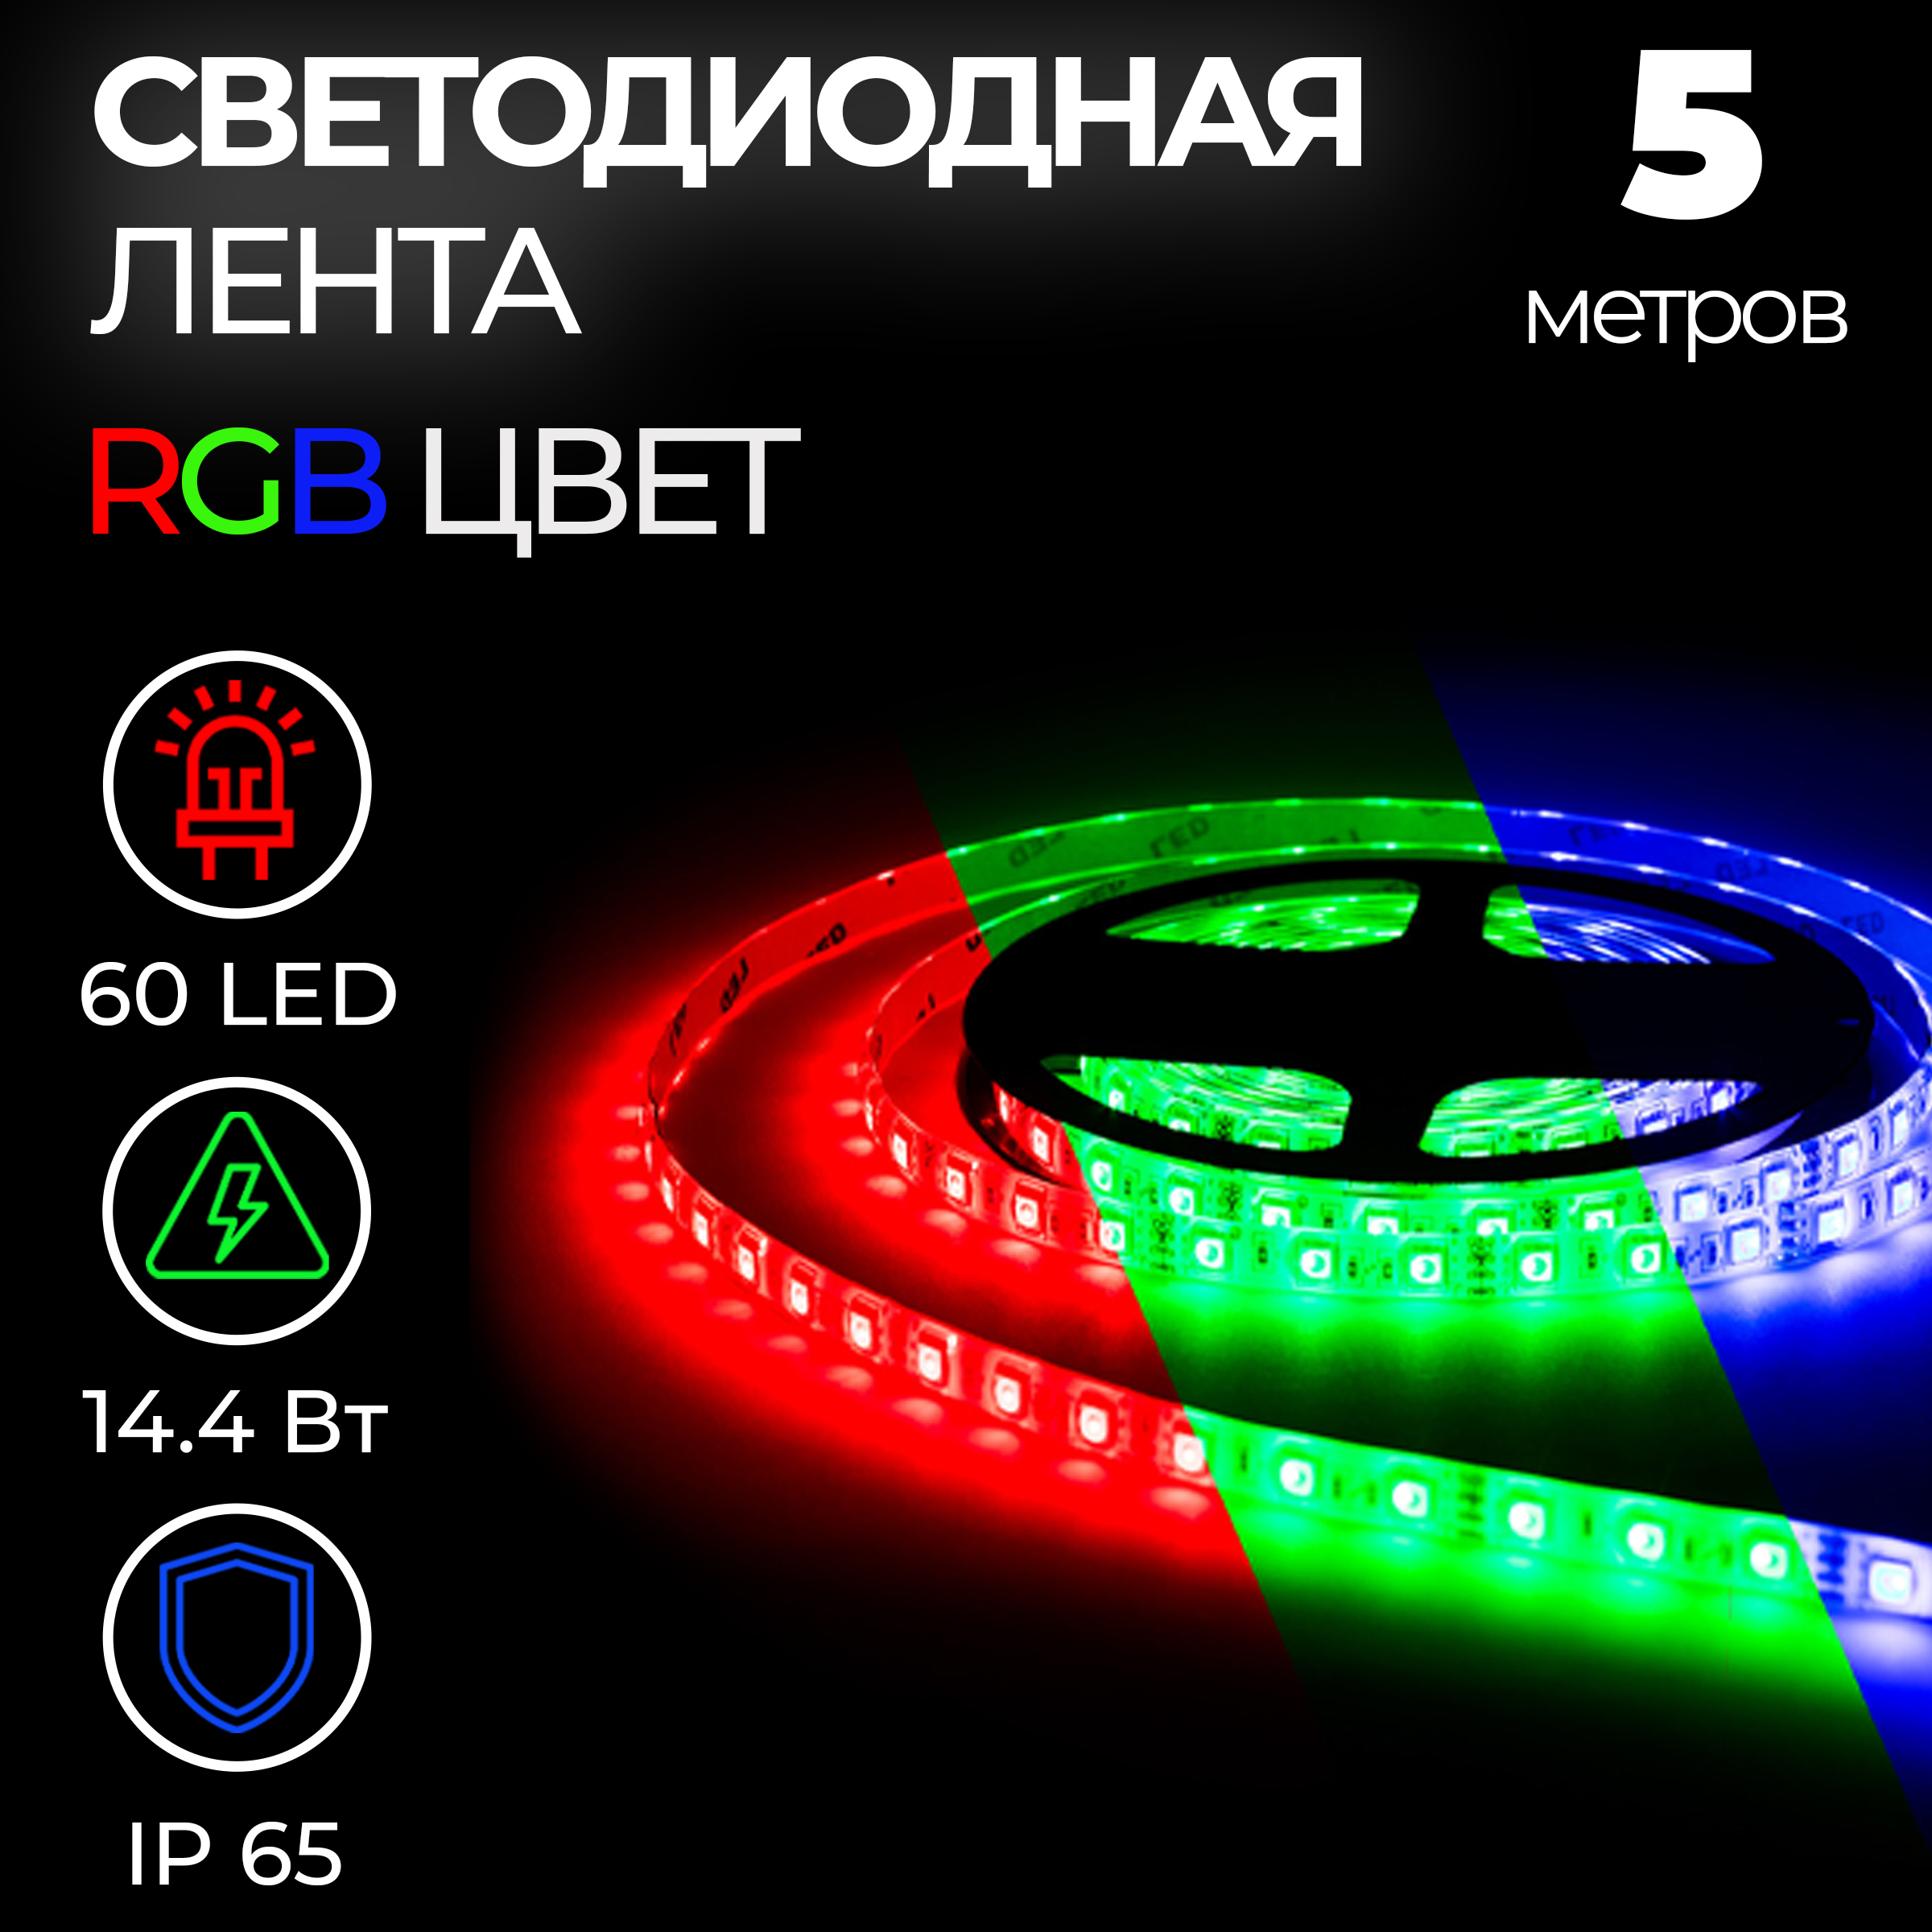 Светодиодная лента SMD 5050, 60 LED, 12 В, 14.4 Вт, 10-12 лм, IP65, RGB, 5 м